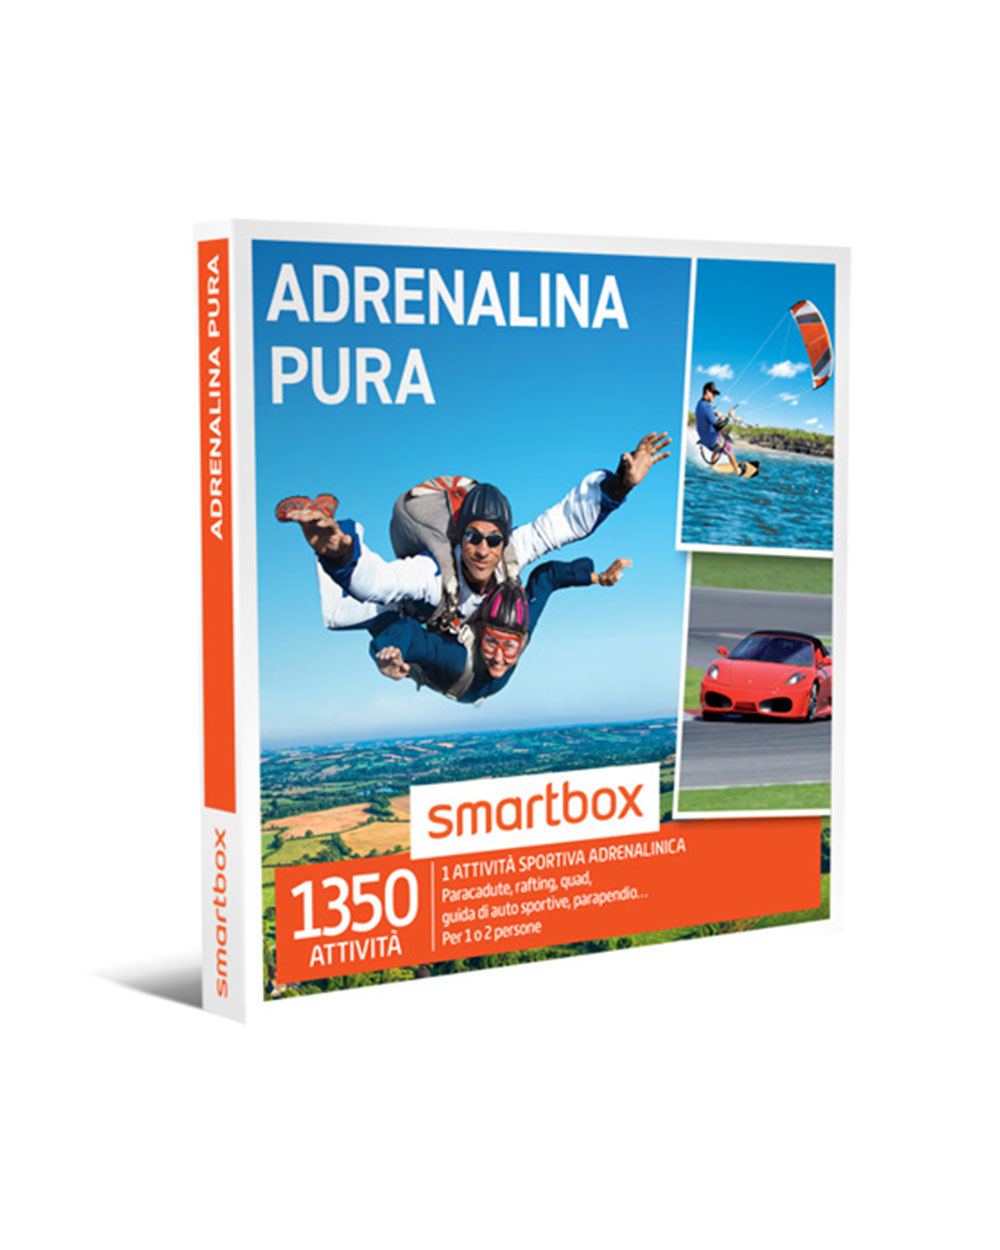 Cofanetto Smartbox Adrenalina Pura con Attività Sportiva Adrenalinica -  Idea Regalo per Lui, Laurea, Compleanno